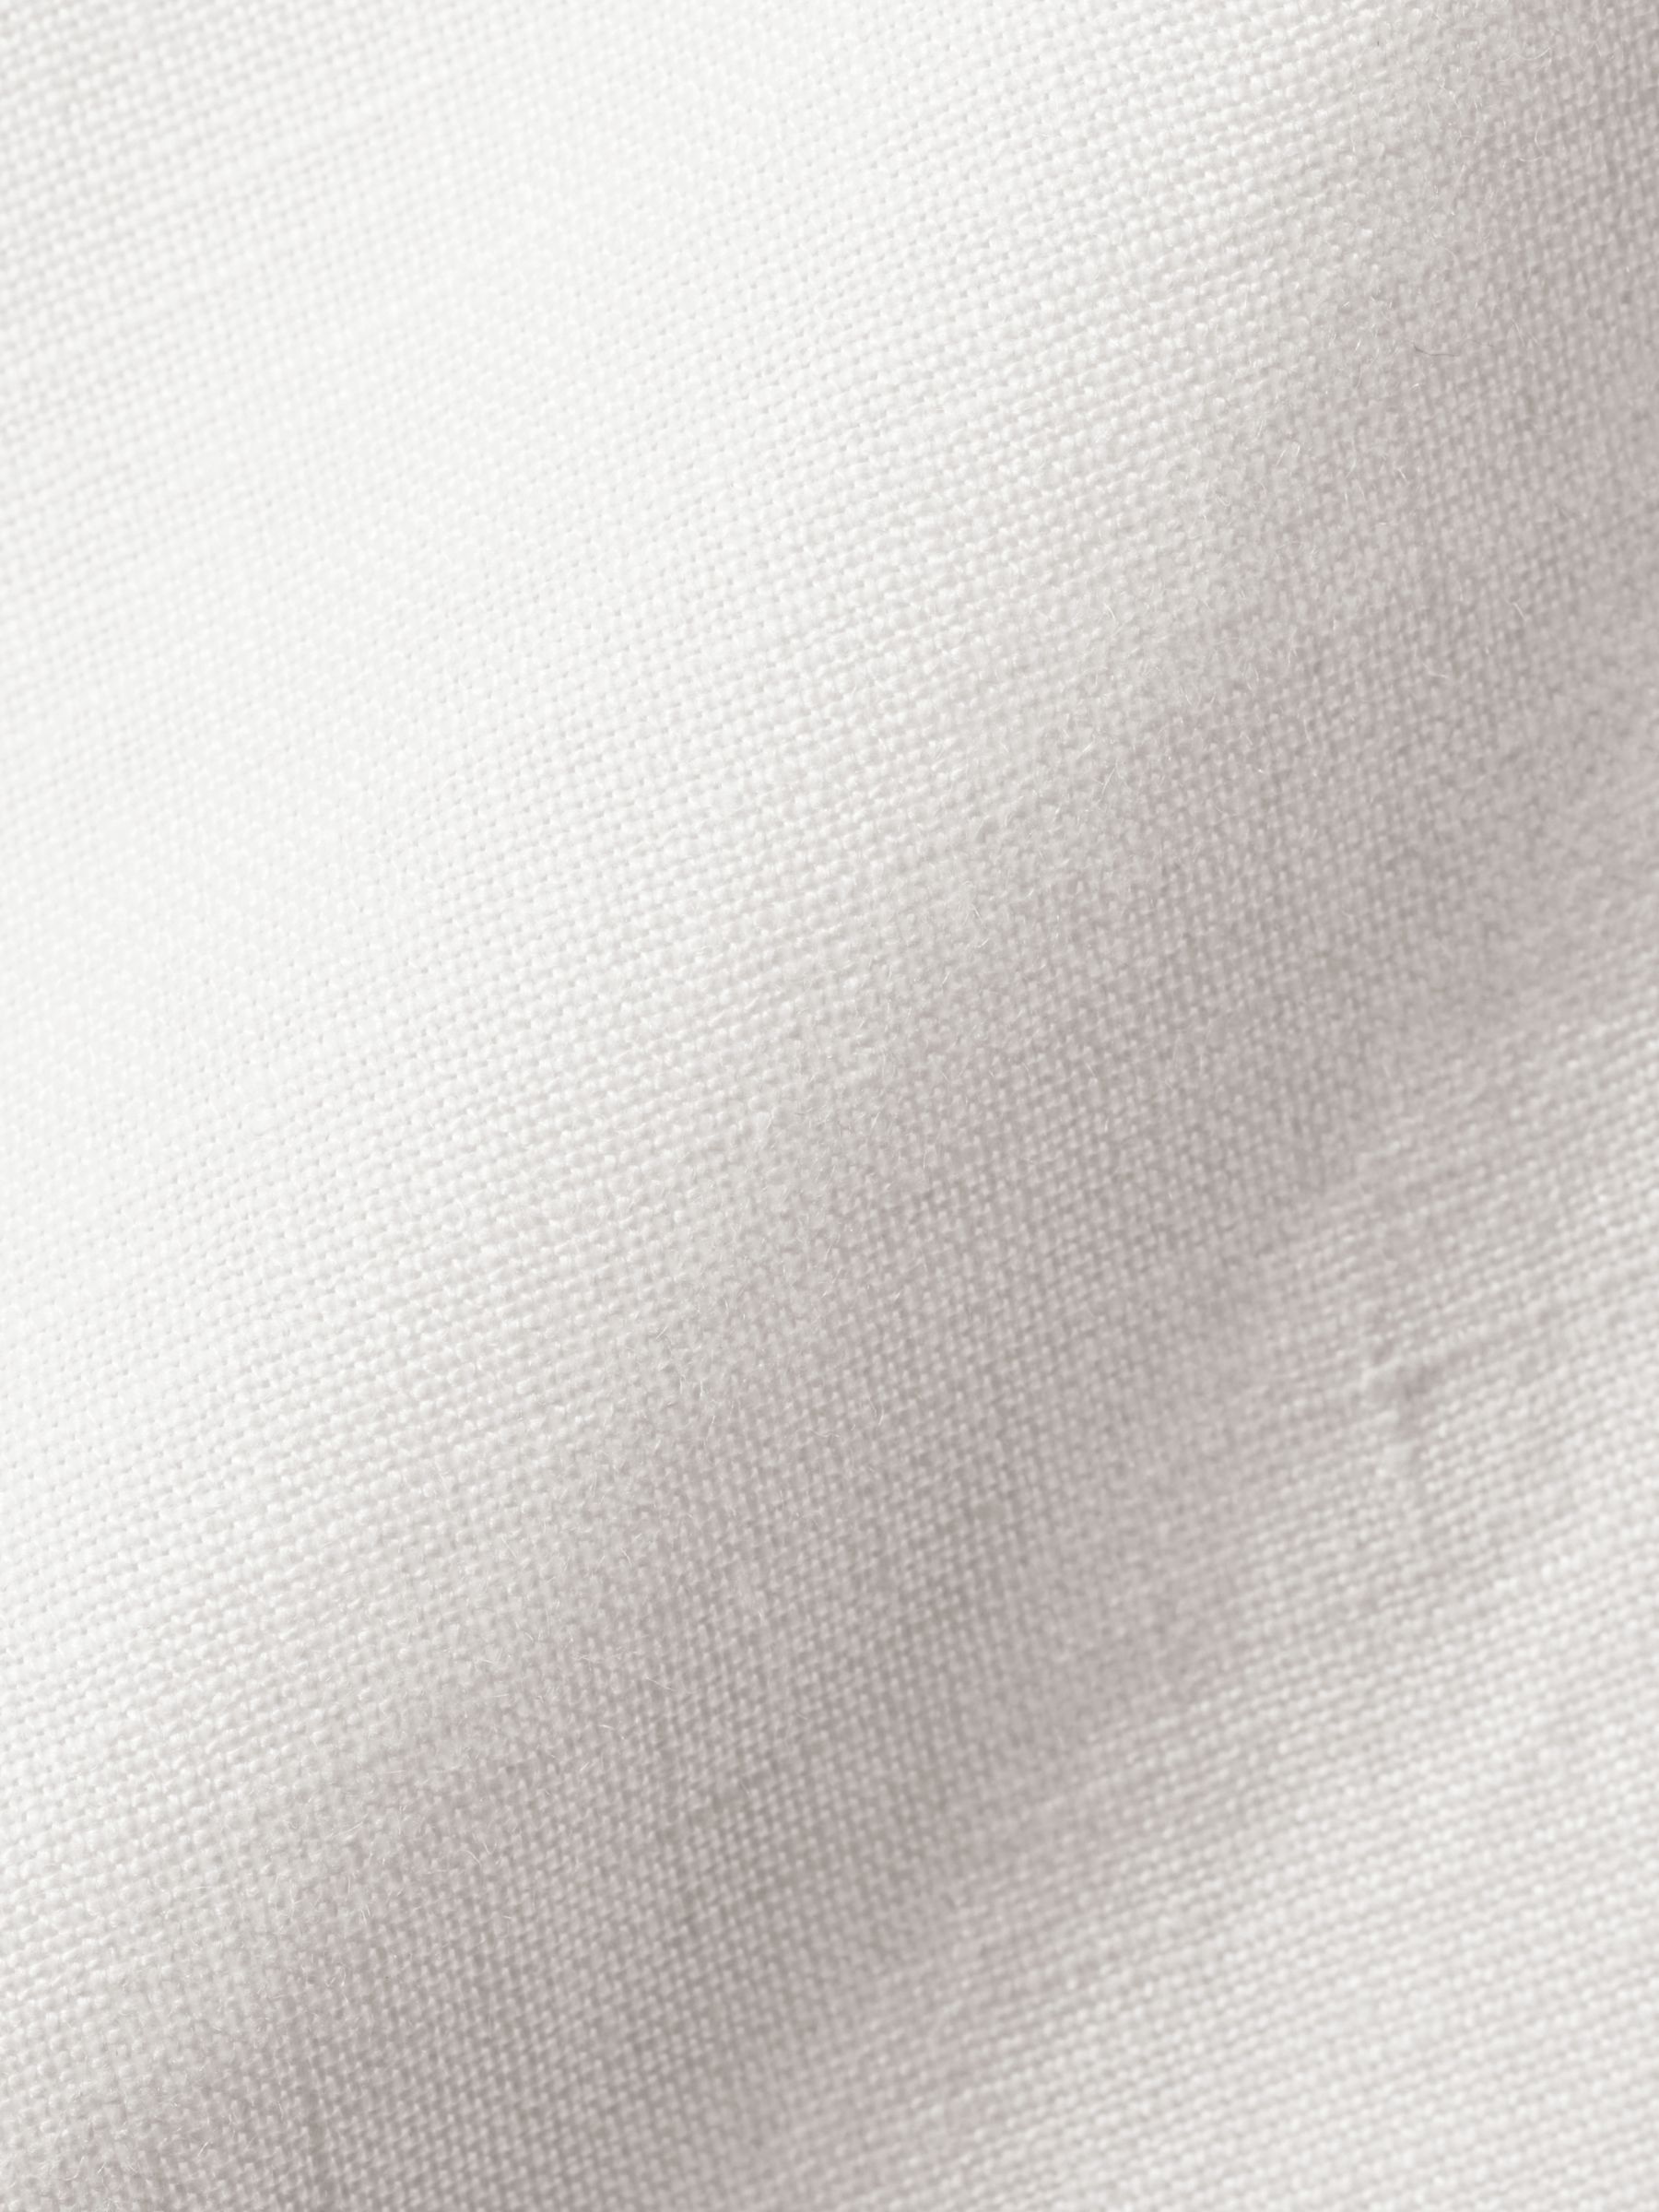 Charles Tyrwhitt Linen Slim Fit Shirt, White, S